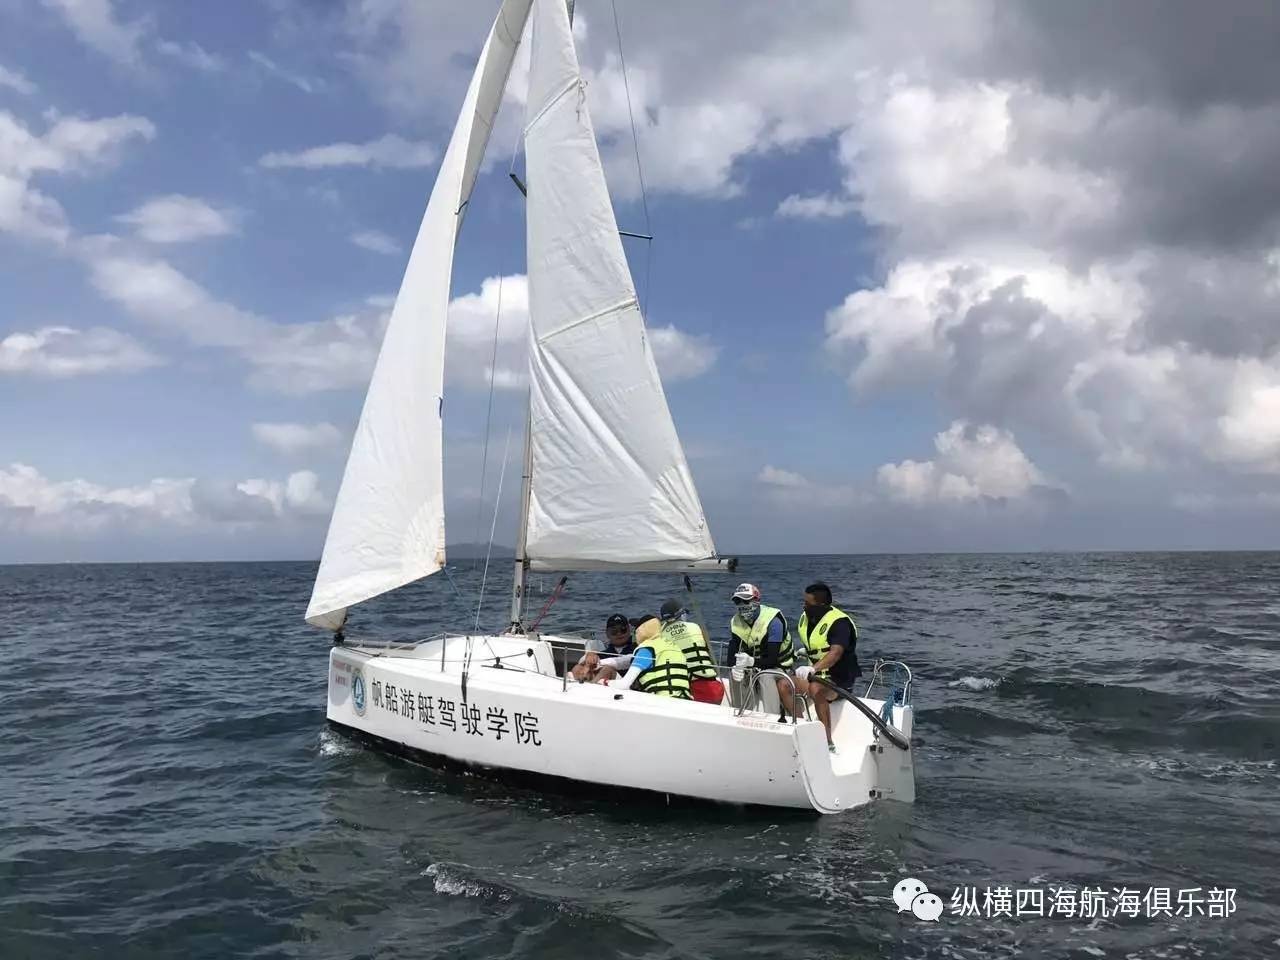 深圳大亚湾海域 培训帆船:珐伊19,18r 类型:可升降龙骨型帆船(适合